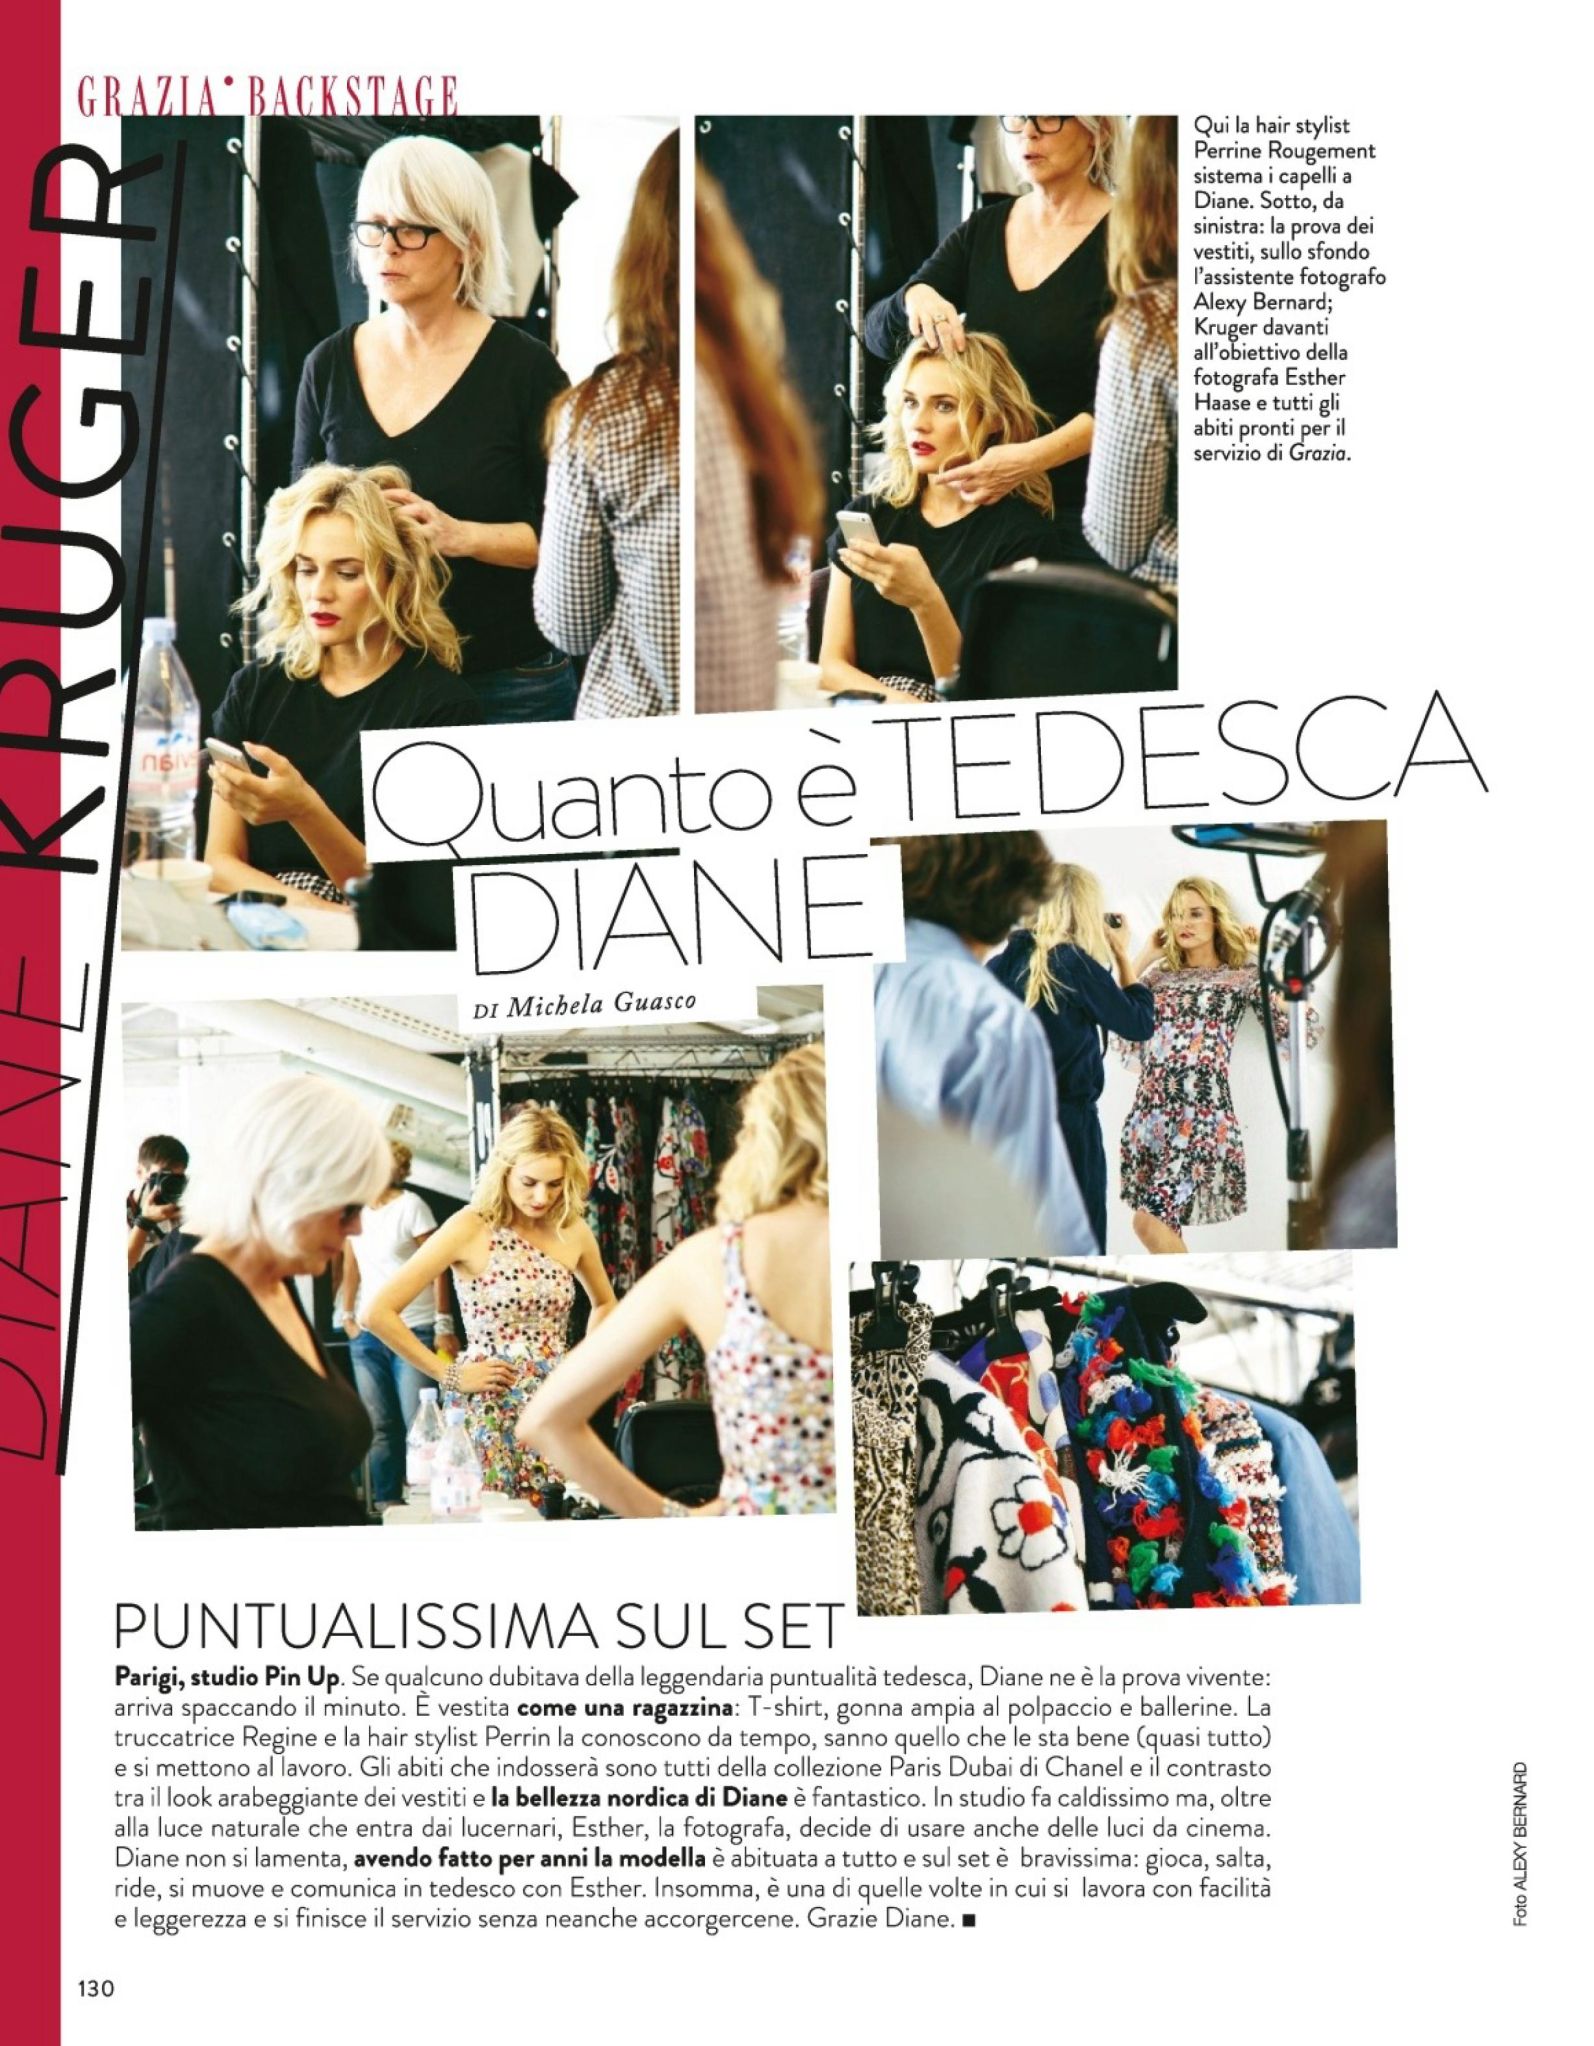 صور ديان كروغر على مجلة غراتسيا إيطاليا 29 أكتوبر 2014